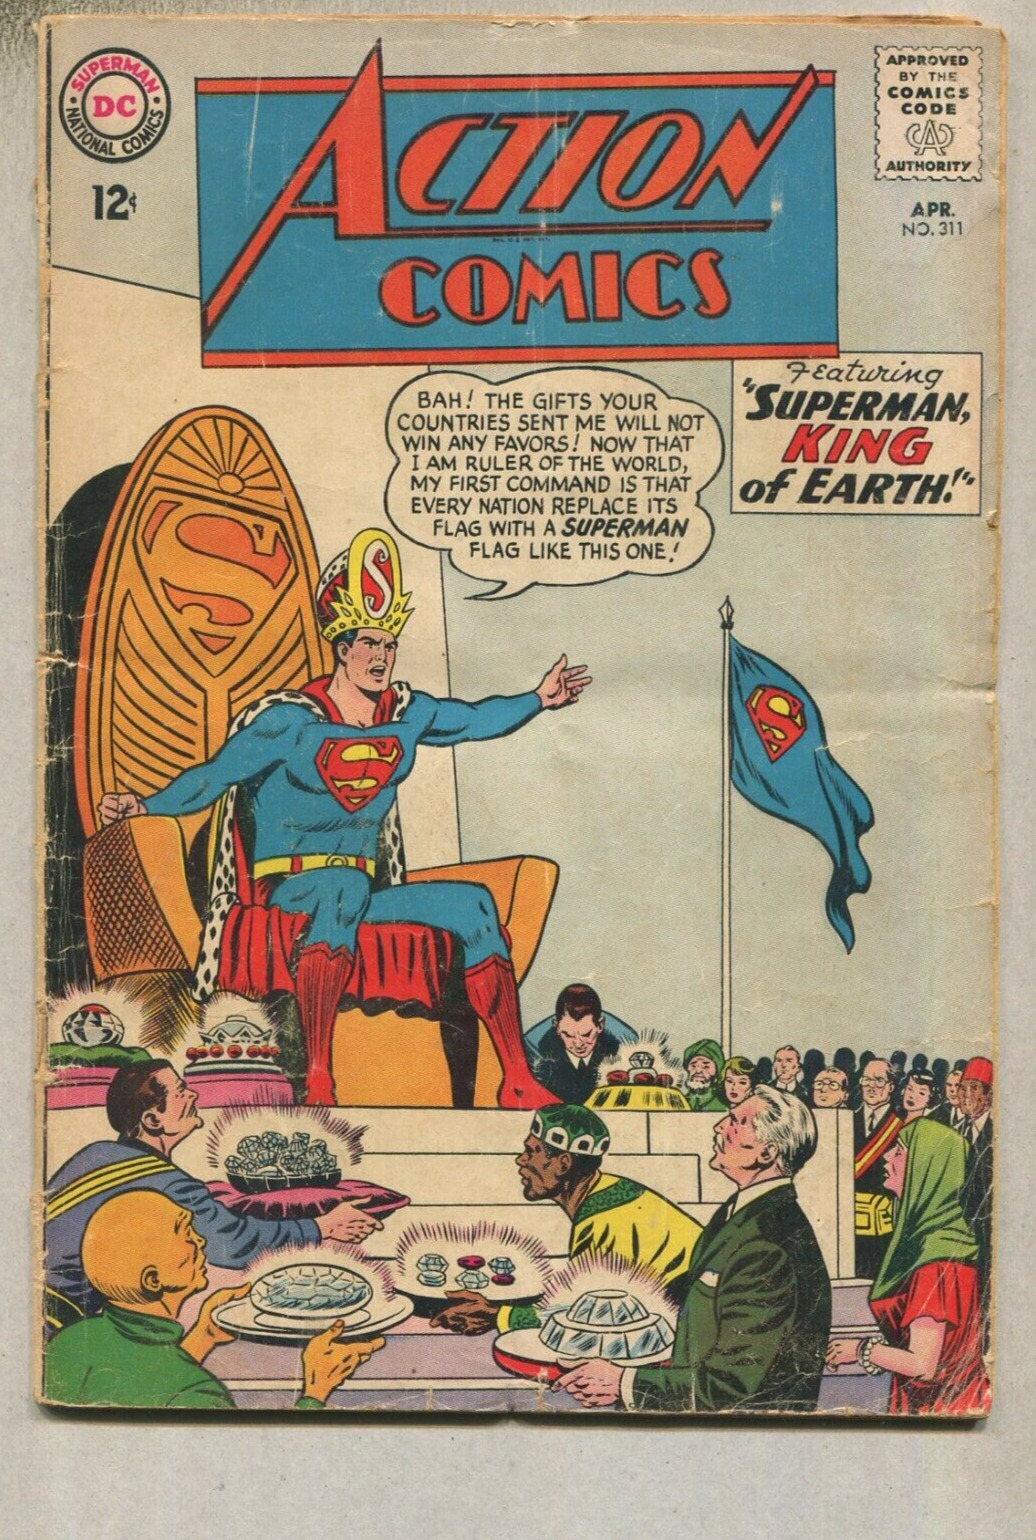 Action Comics:  Superman # 311  GD  Superman King Of Earth DC Comics D1